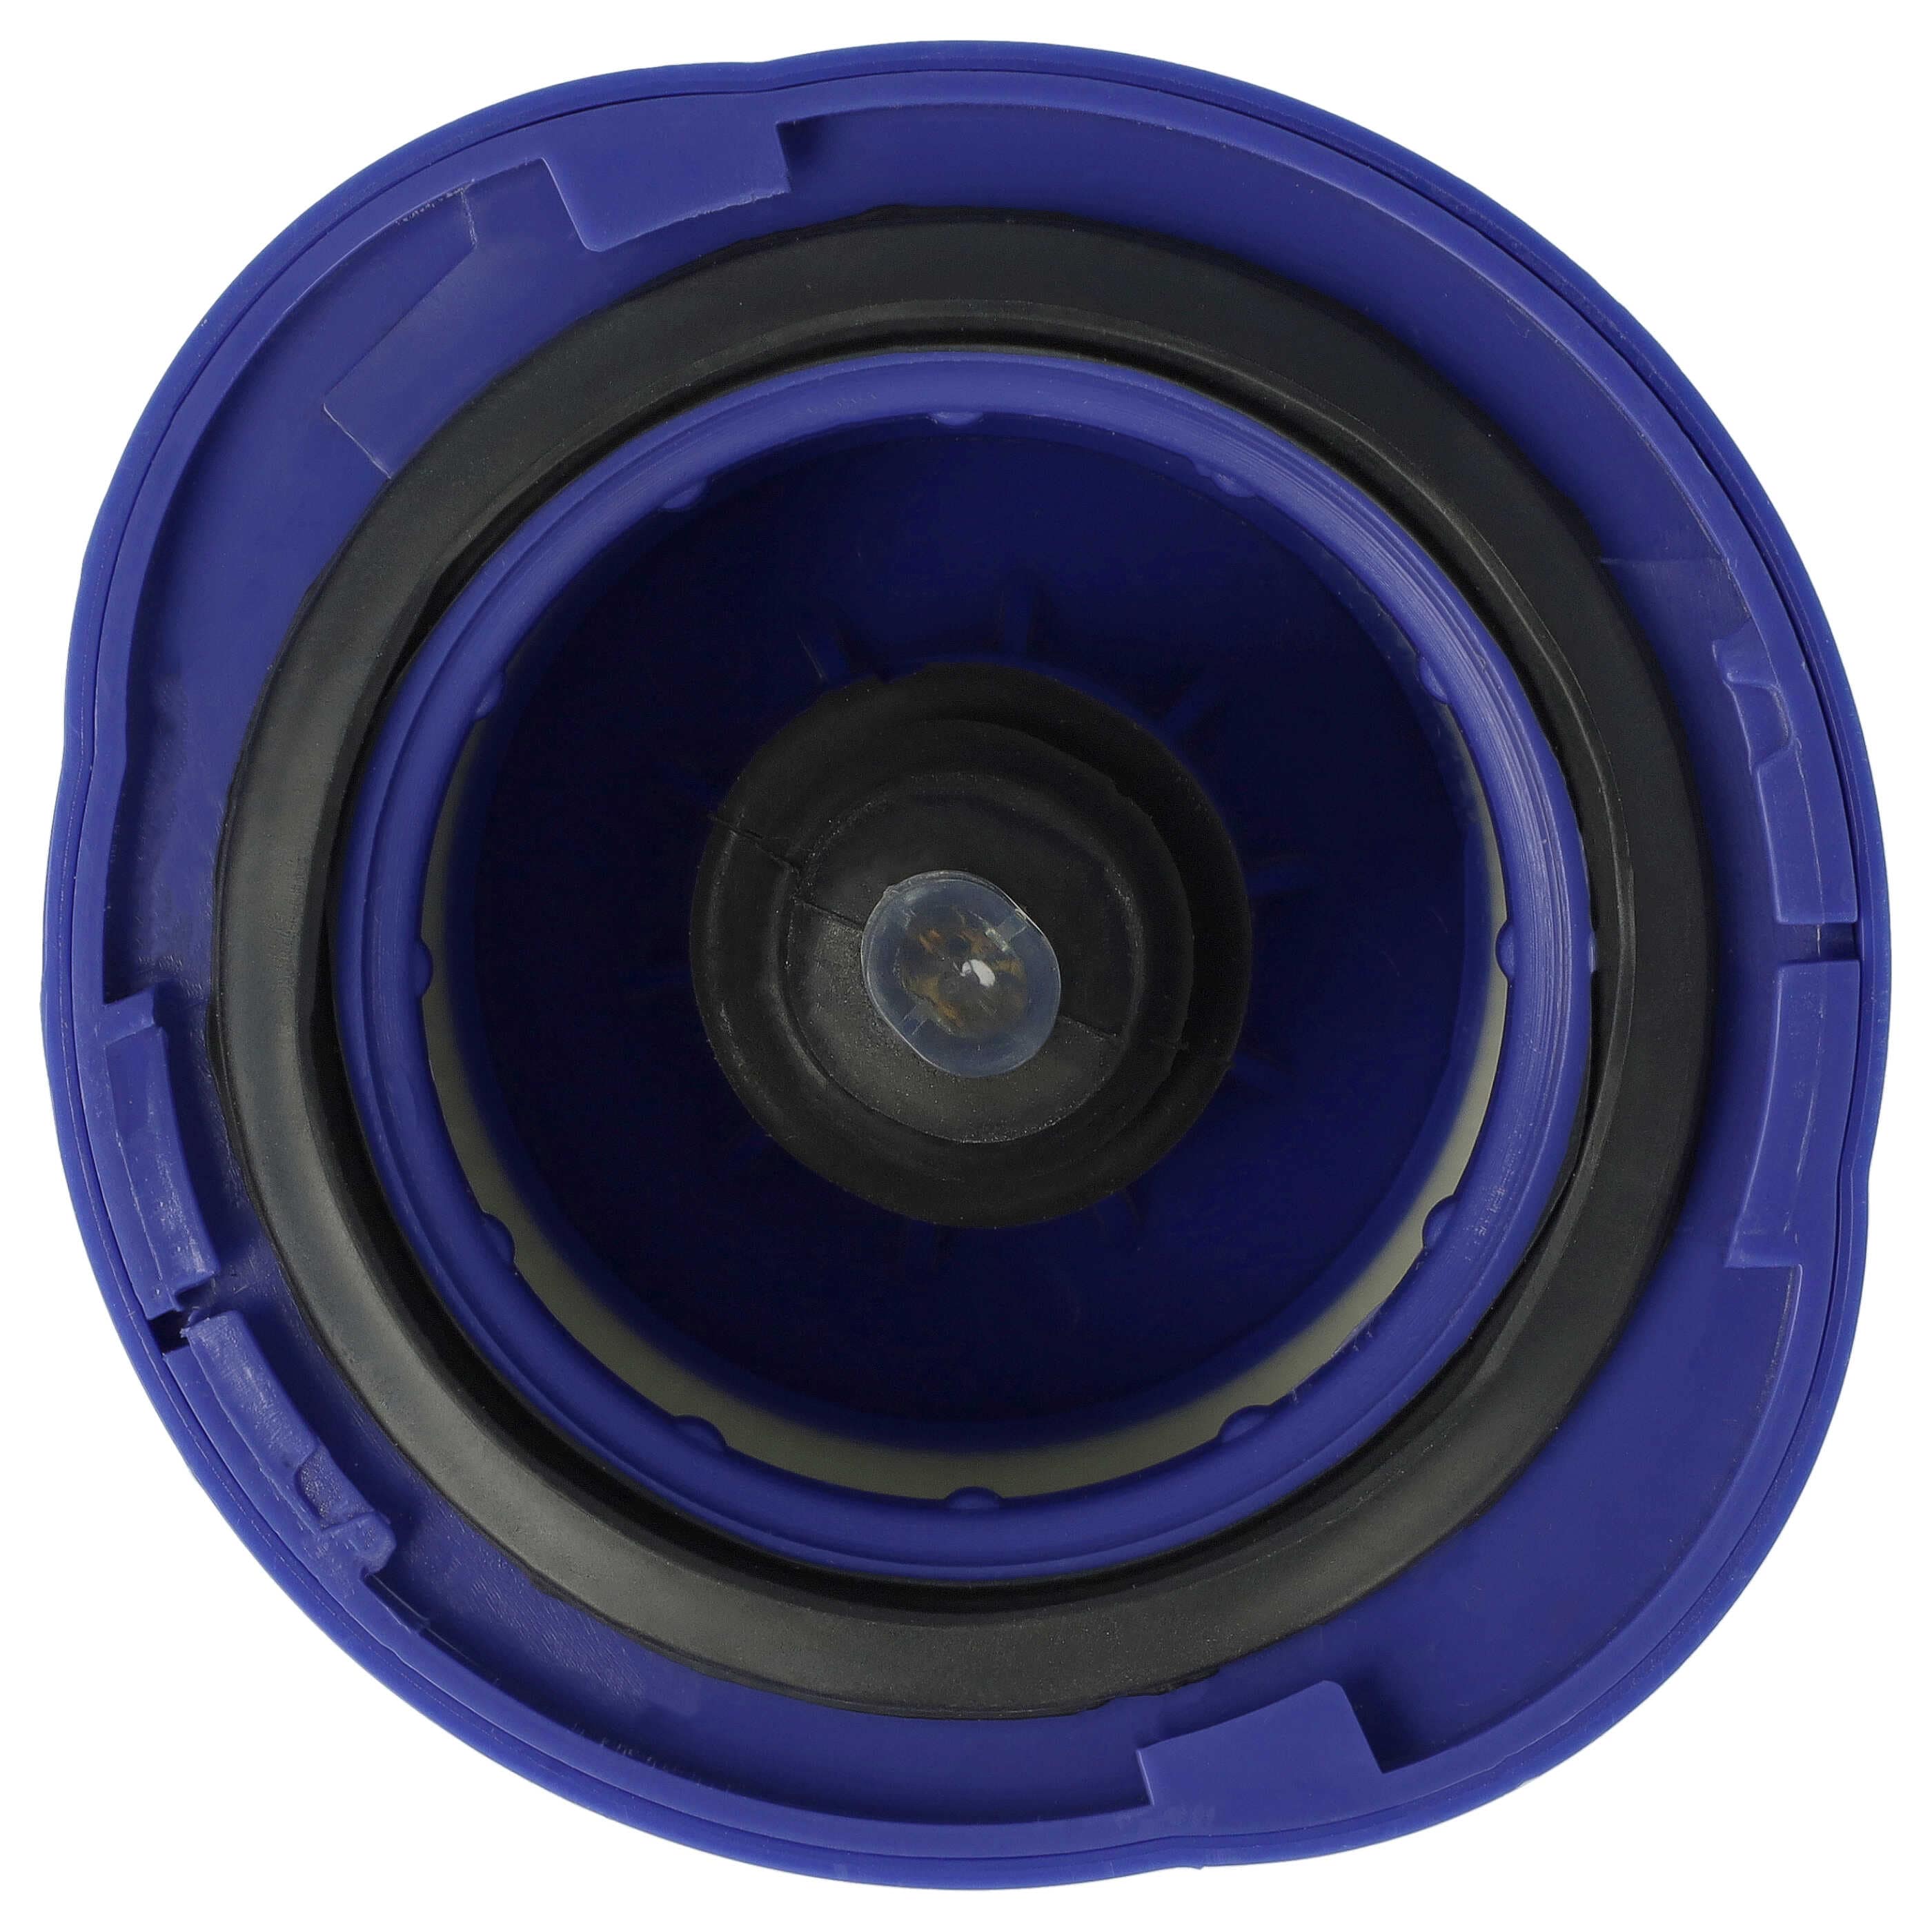 2x Filtro sostituisce Dyson 966741-01 per aspirapolvere - filtro HEPA post-motore, bianco / lilla